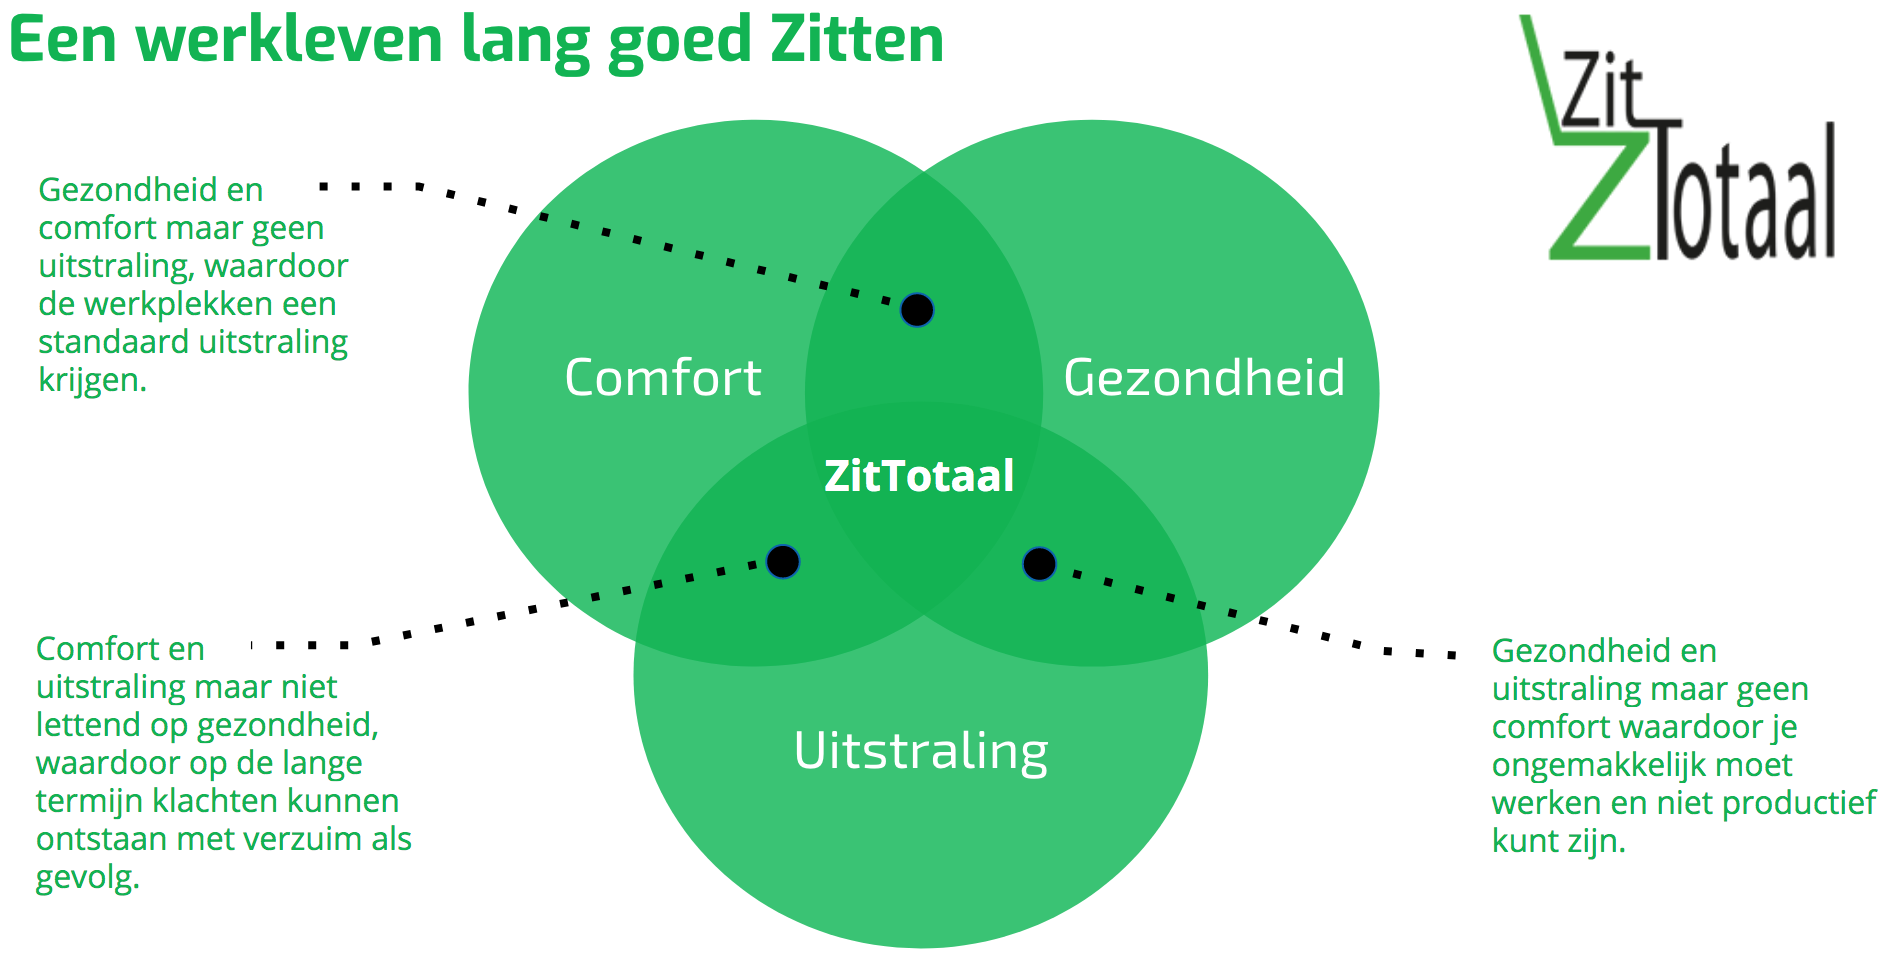 Het ZitTotaal model